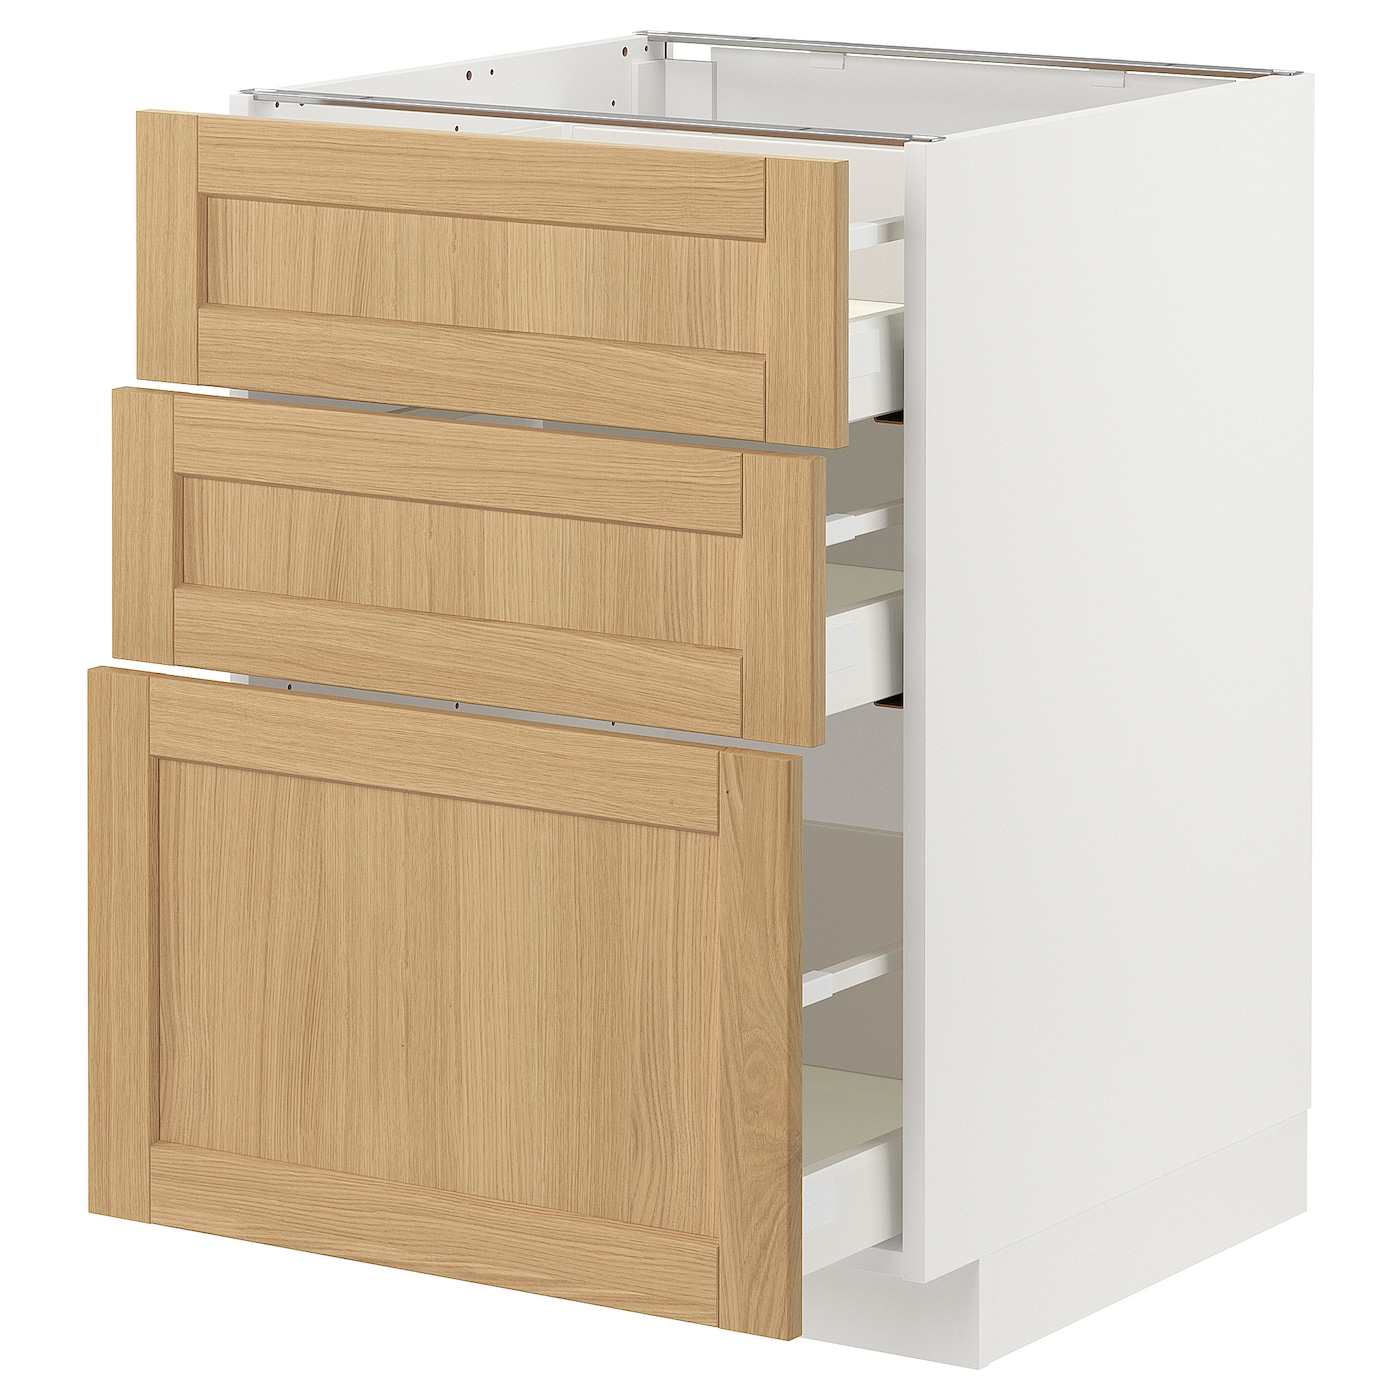 Напольный шкаф - METOD / MAXIMERA IKEA/ МЕТОД/ МАКСИМЕРА ИКЕА,  60х60 см, белый/под беленый дуб